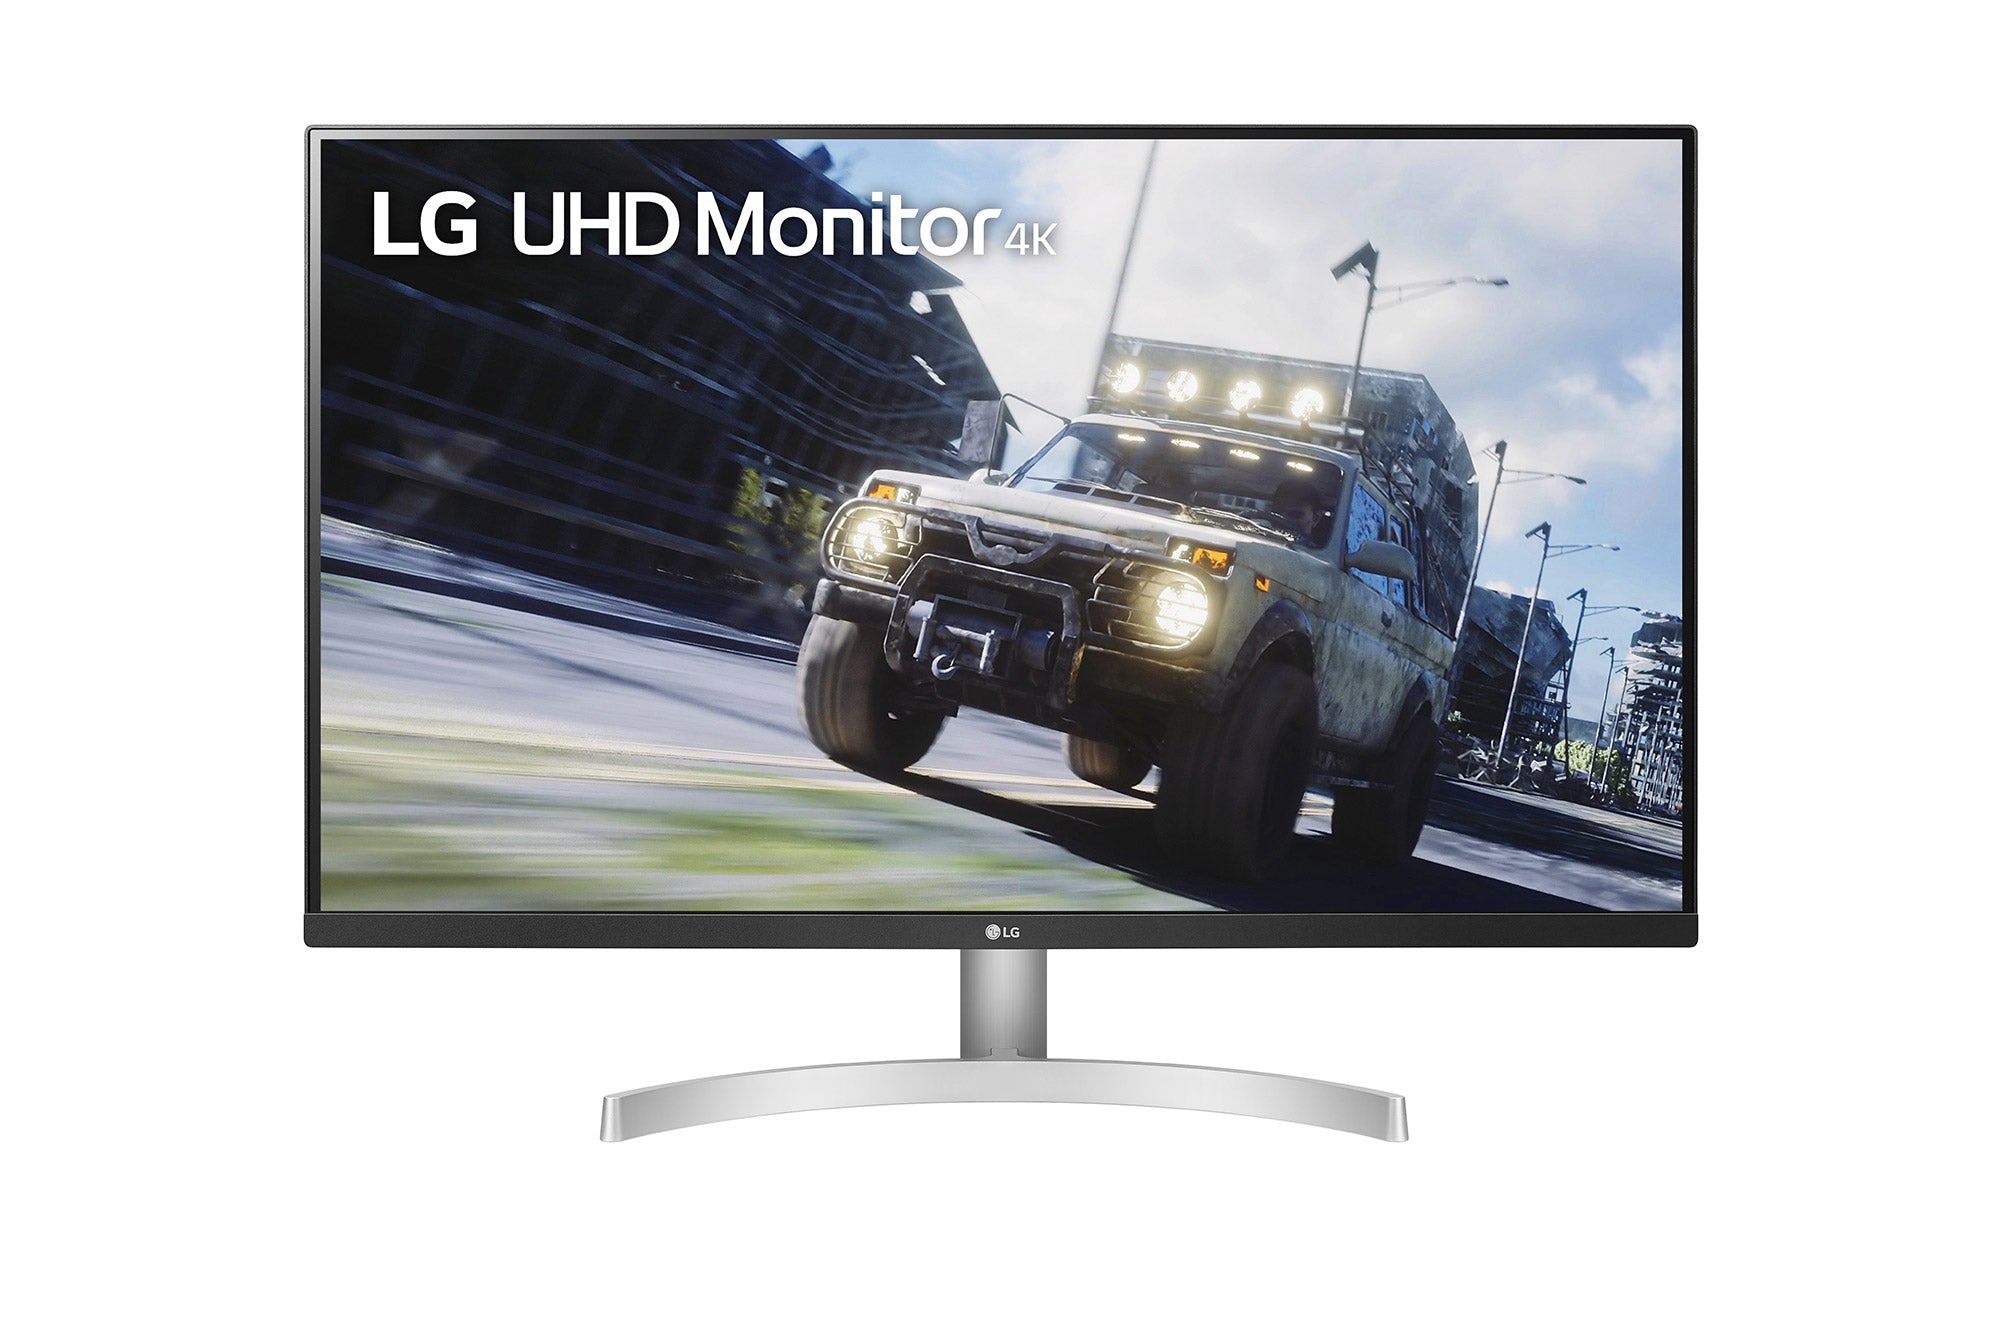 LG 32UN500 UltraHD Monitor / 32 inch / 3840 x 2160 Resolution /AMD FreeSync / Dynamic Action Sync / Black Stabilizer